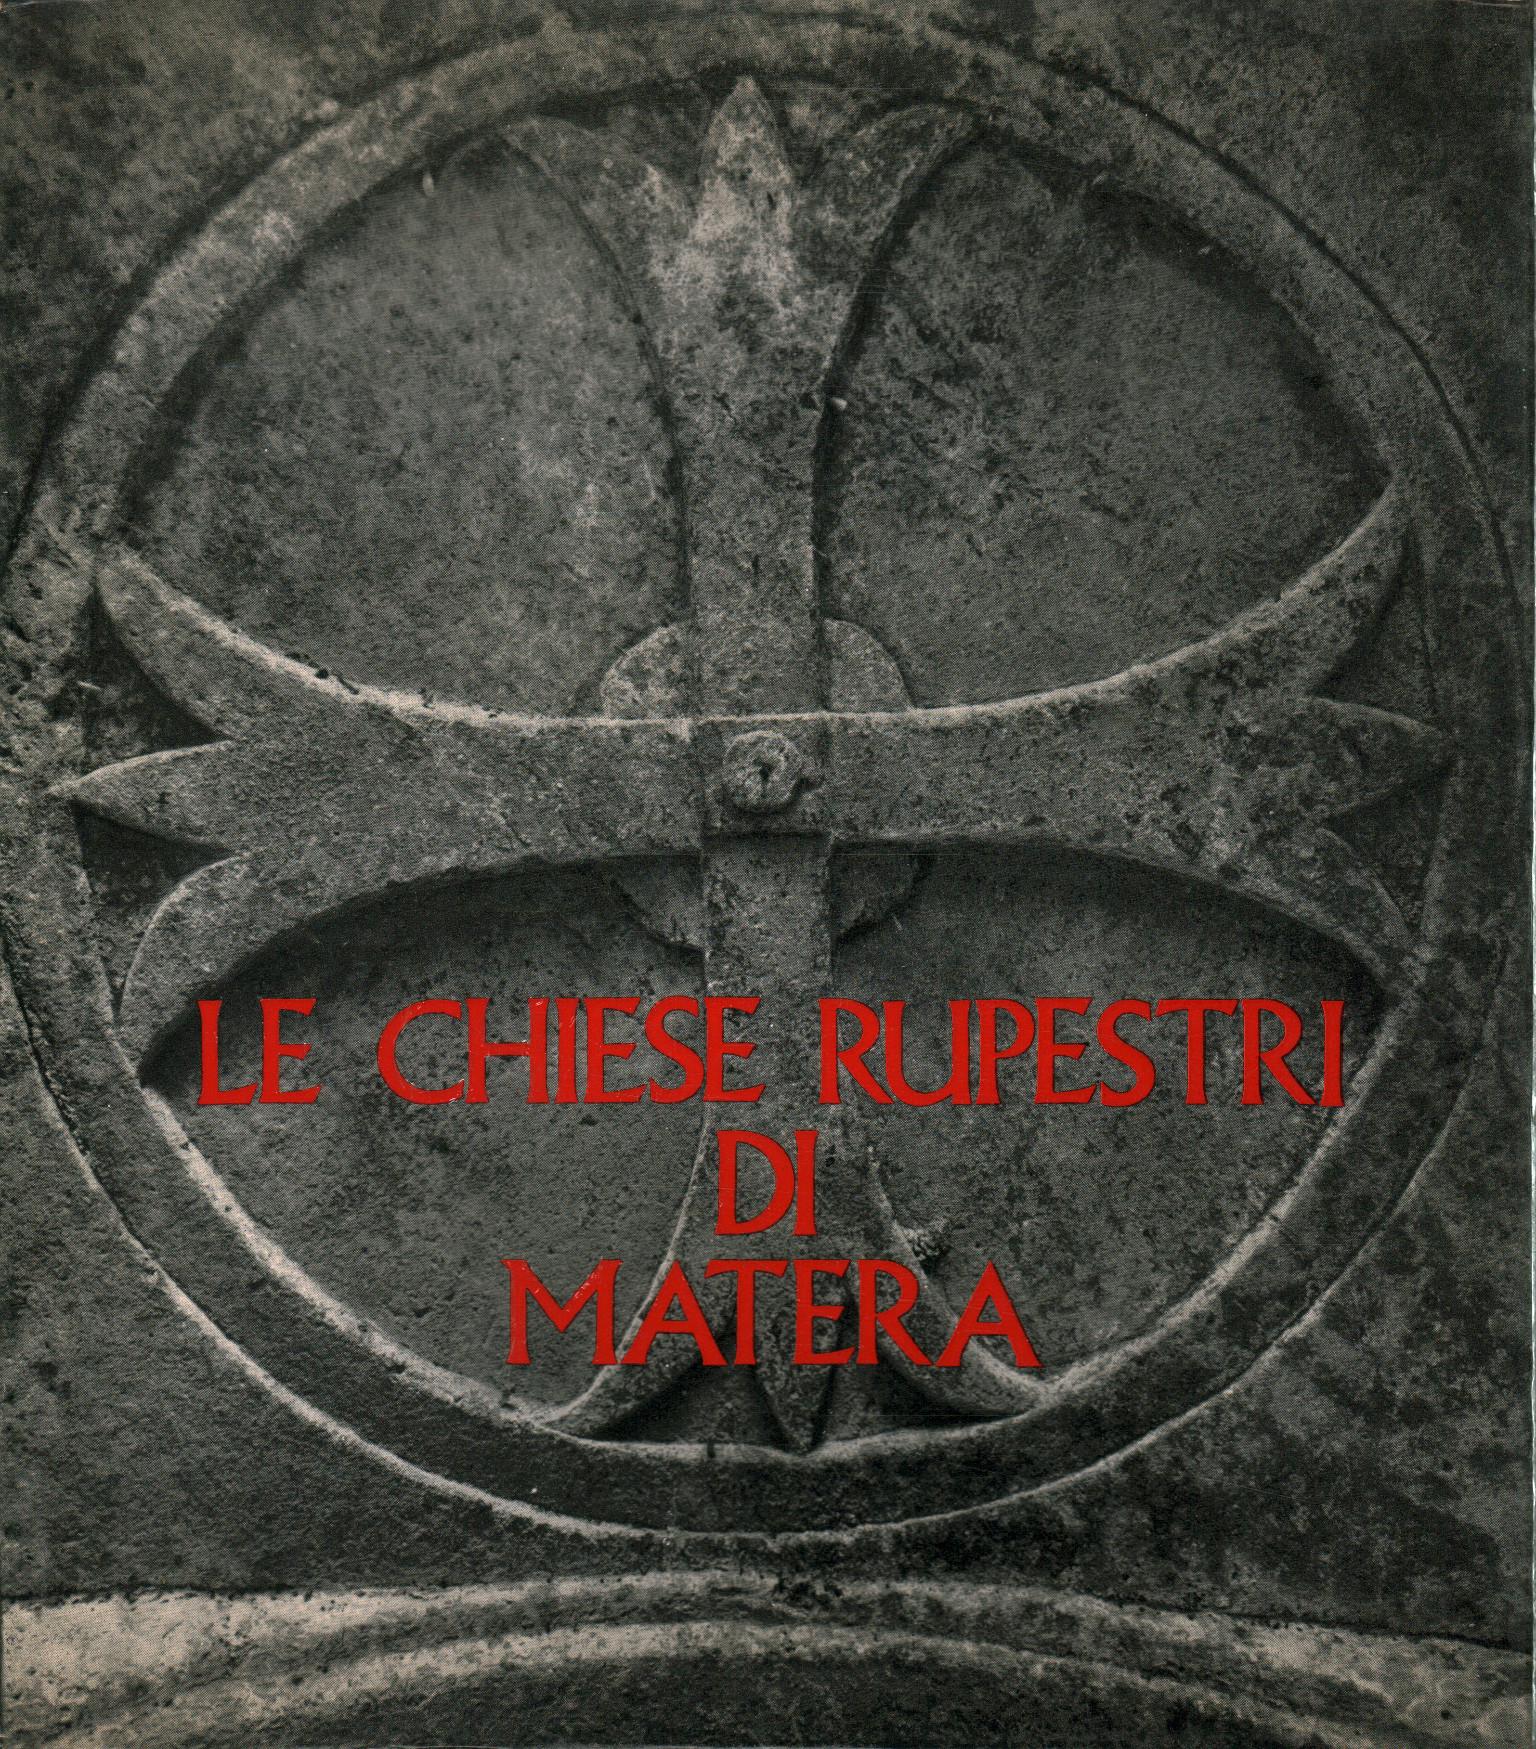 Die Felsenkirchen von Matera